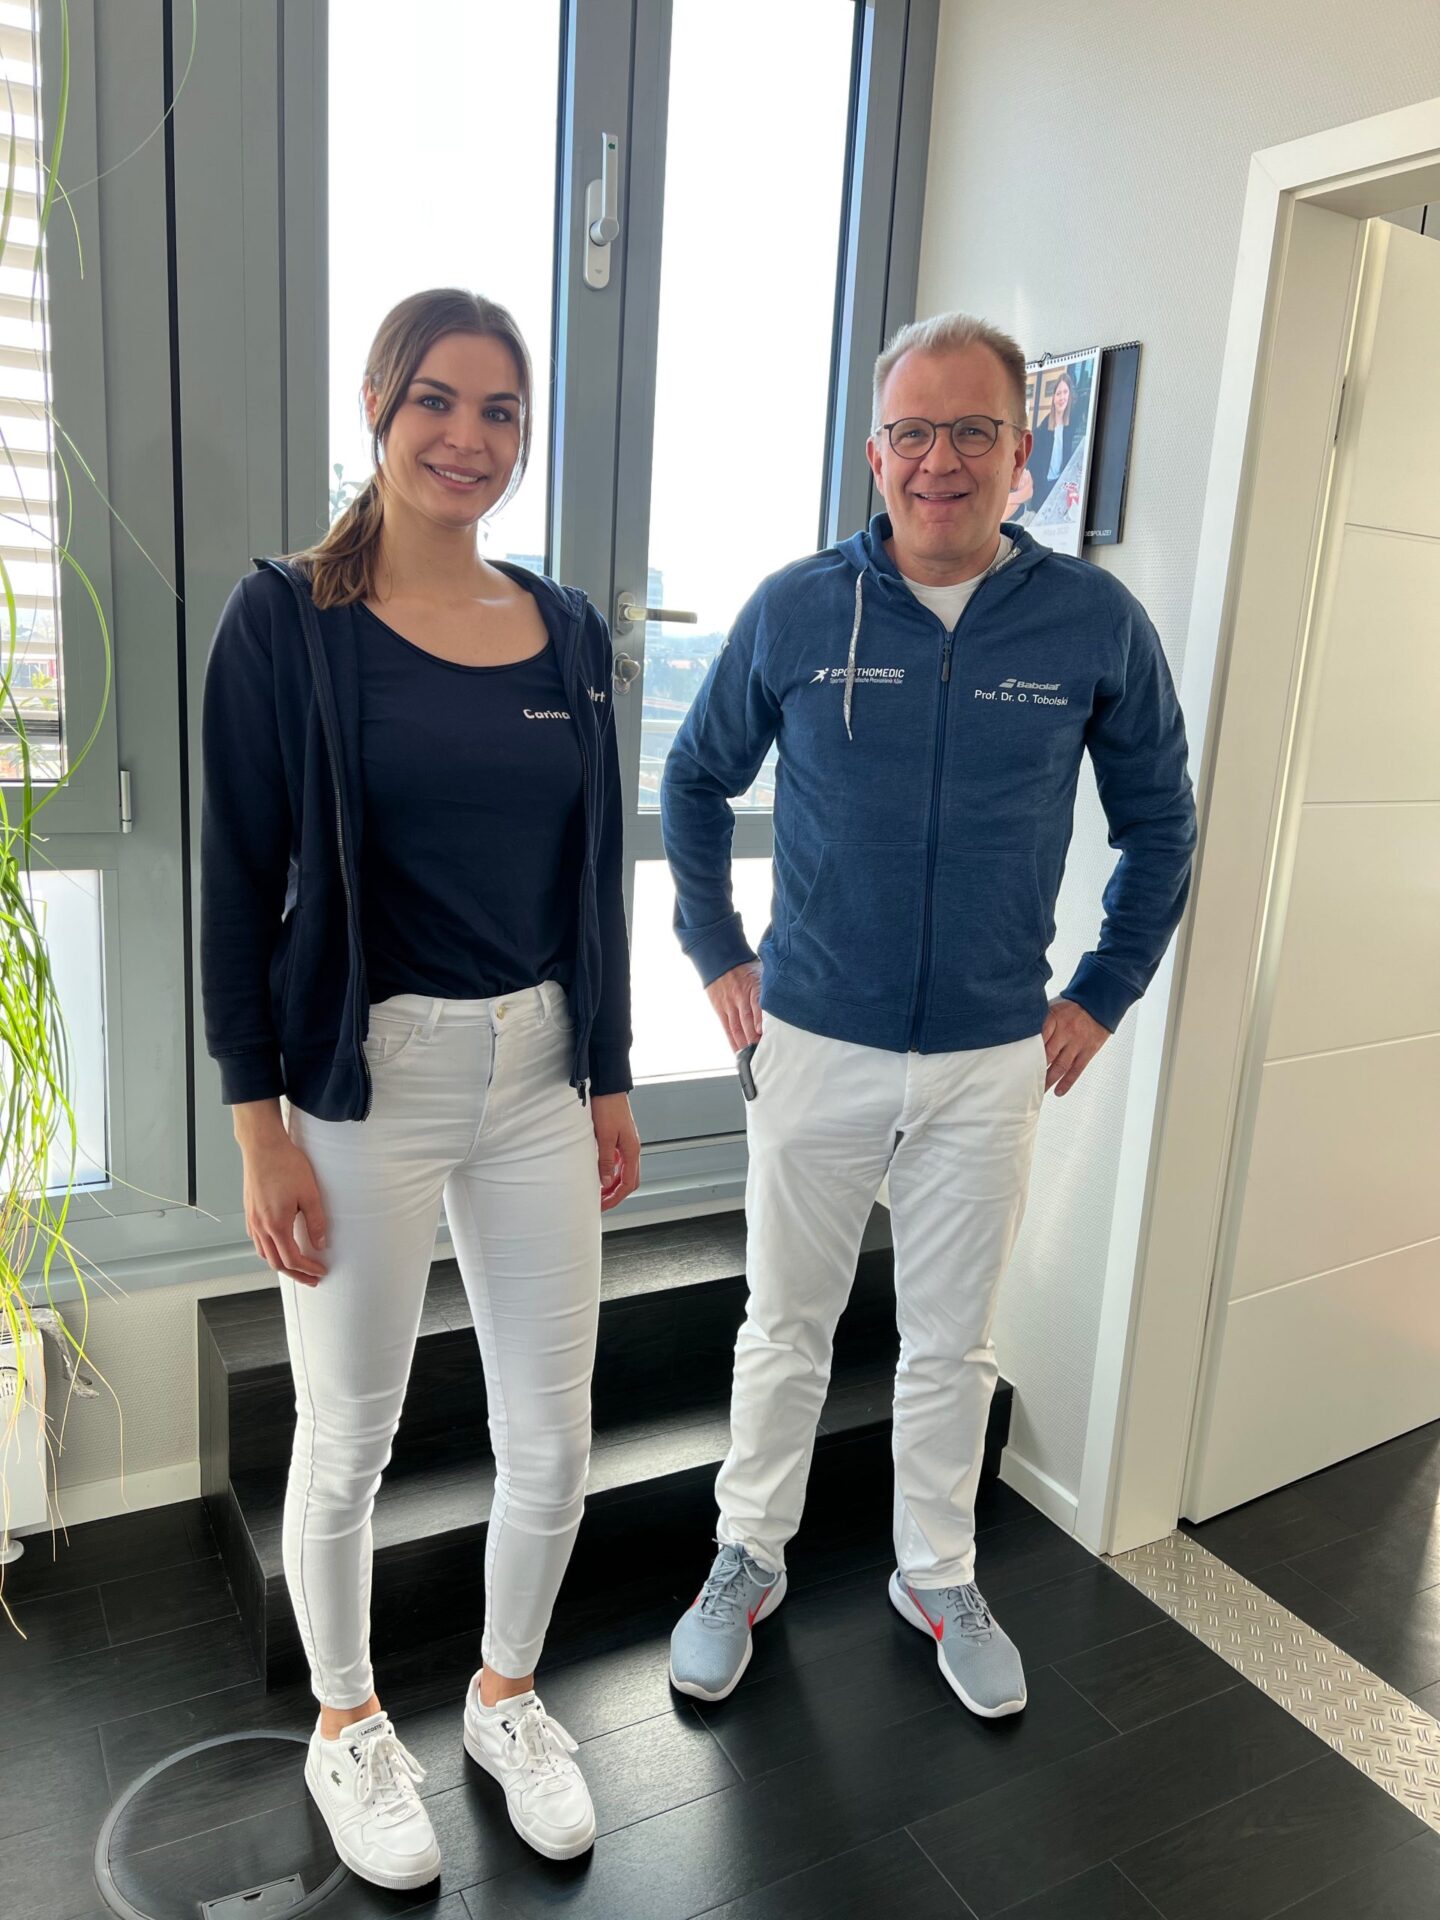 Prof. Dr. Oliver-Tobolski mit Carina Kertz bei der Vertragsunterschrift als Premium-Sponsor für Marienburger Sportclub Köln